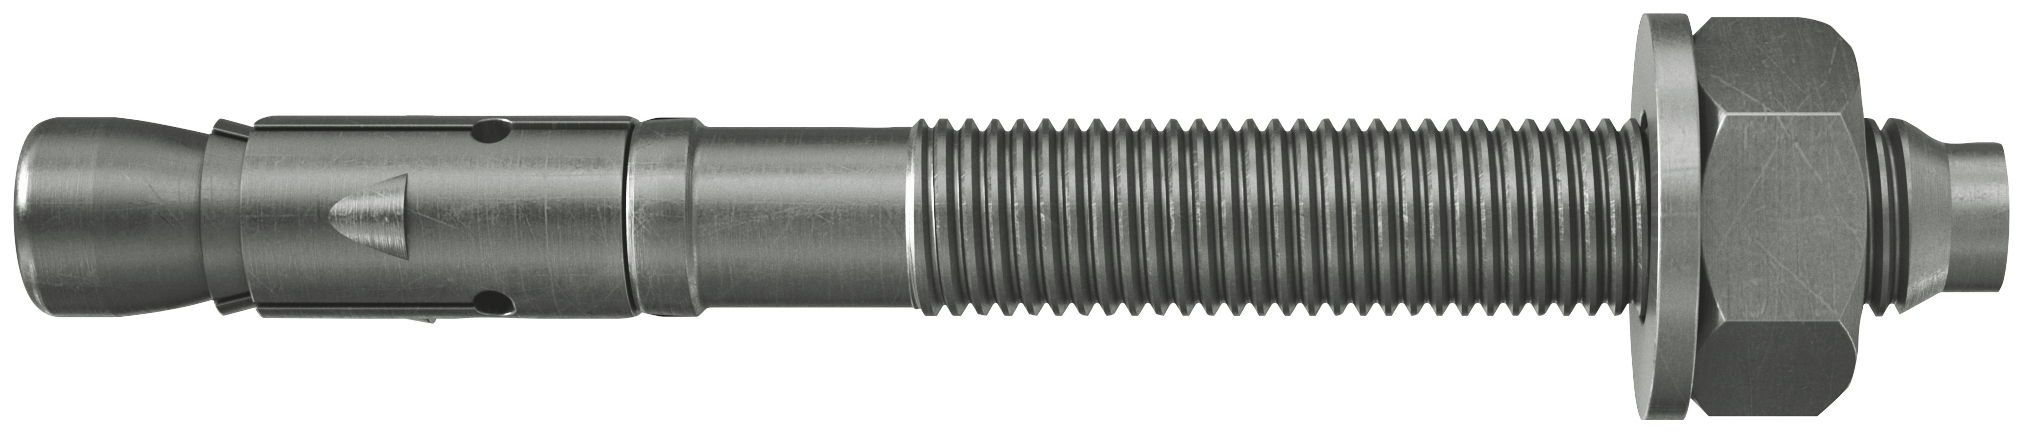 fischer Tassello acciaio FAZ II 20/60 A4 (4 Pz.) L'ancorante ad espansione ad alte prestazioni per carichi statici su calcestruzzo fessurato e per applicazioni sismiche. Versione in acciaio inossidabile con classe di resistenza alla corrosione CRC III..